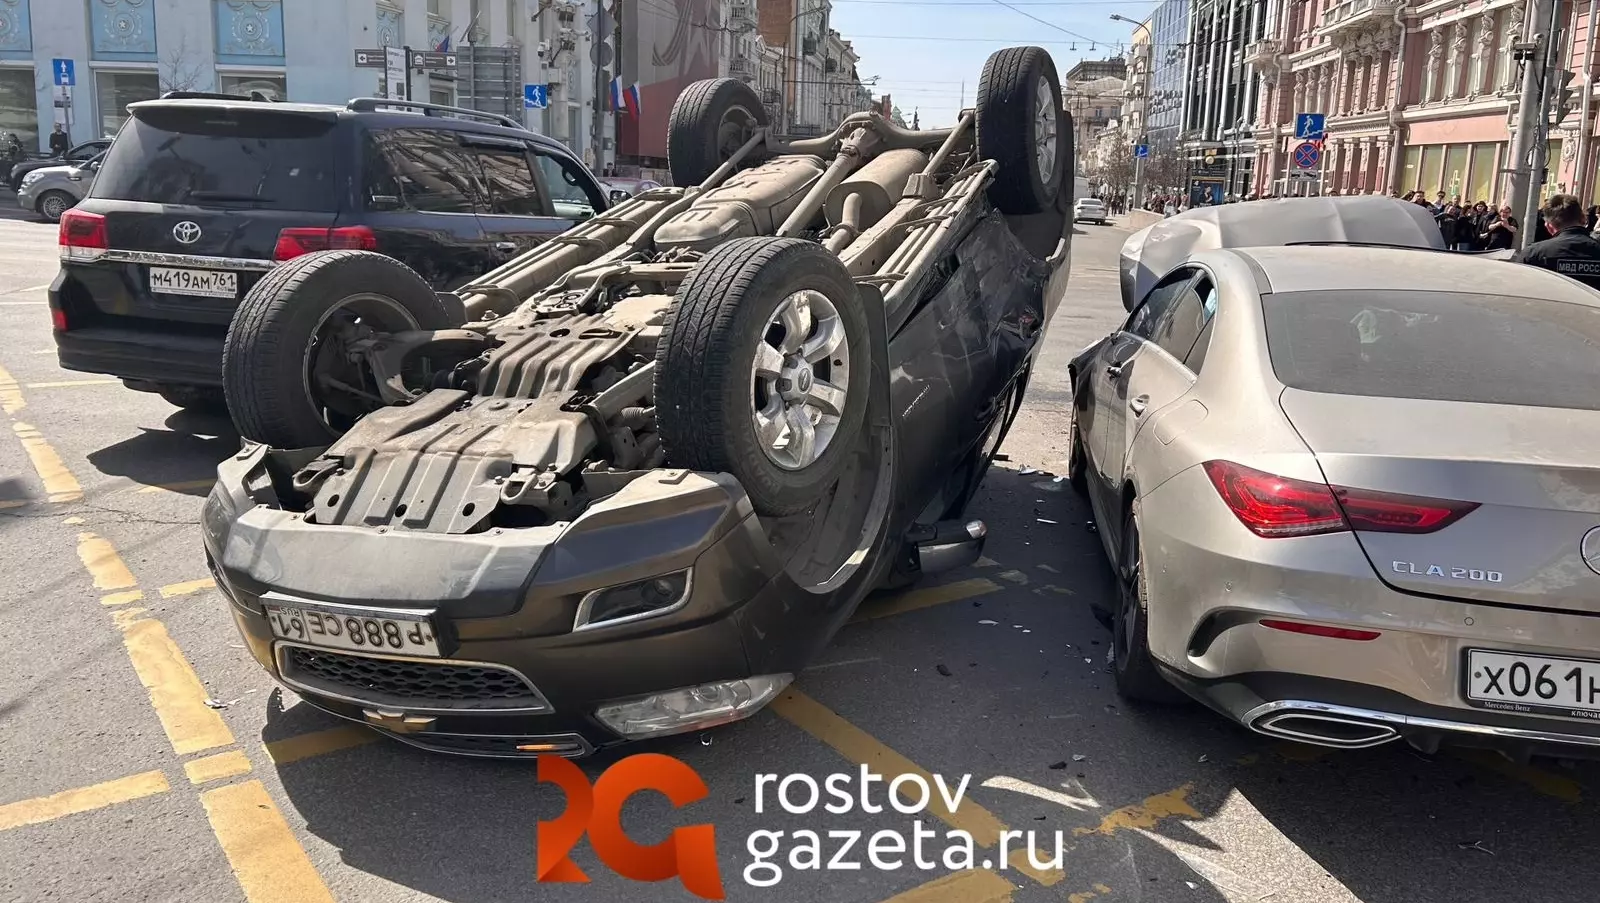 Жесткая авария с троллейбусом и машинами произошла в Ростове-на-Дону 1 апреля